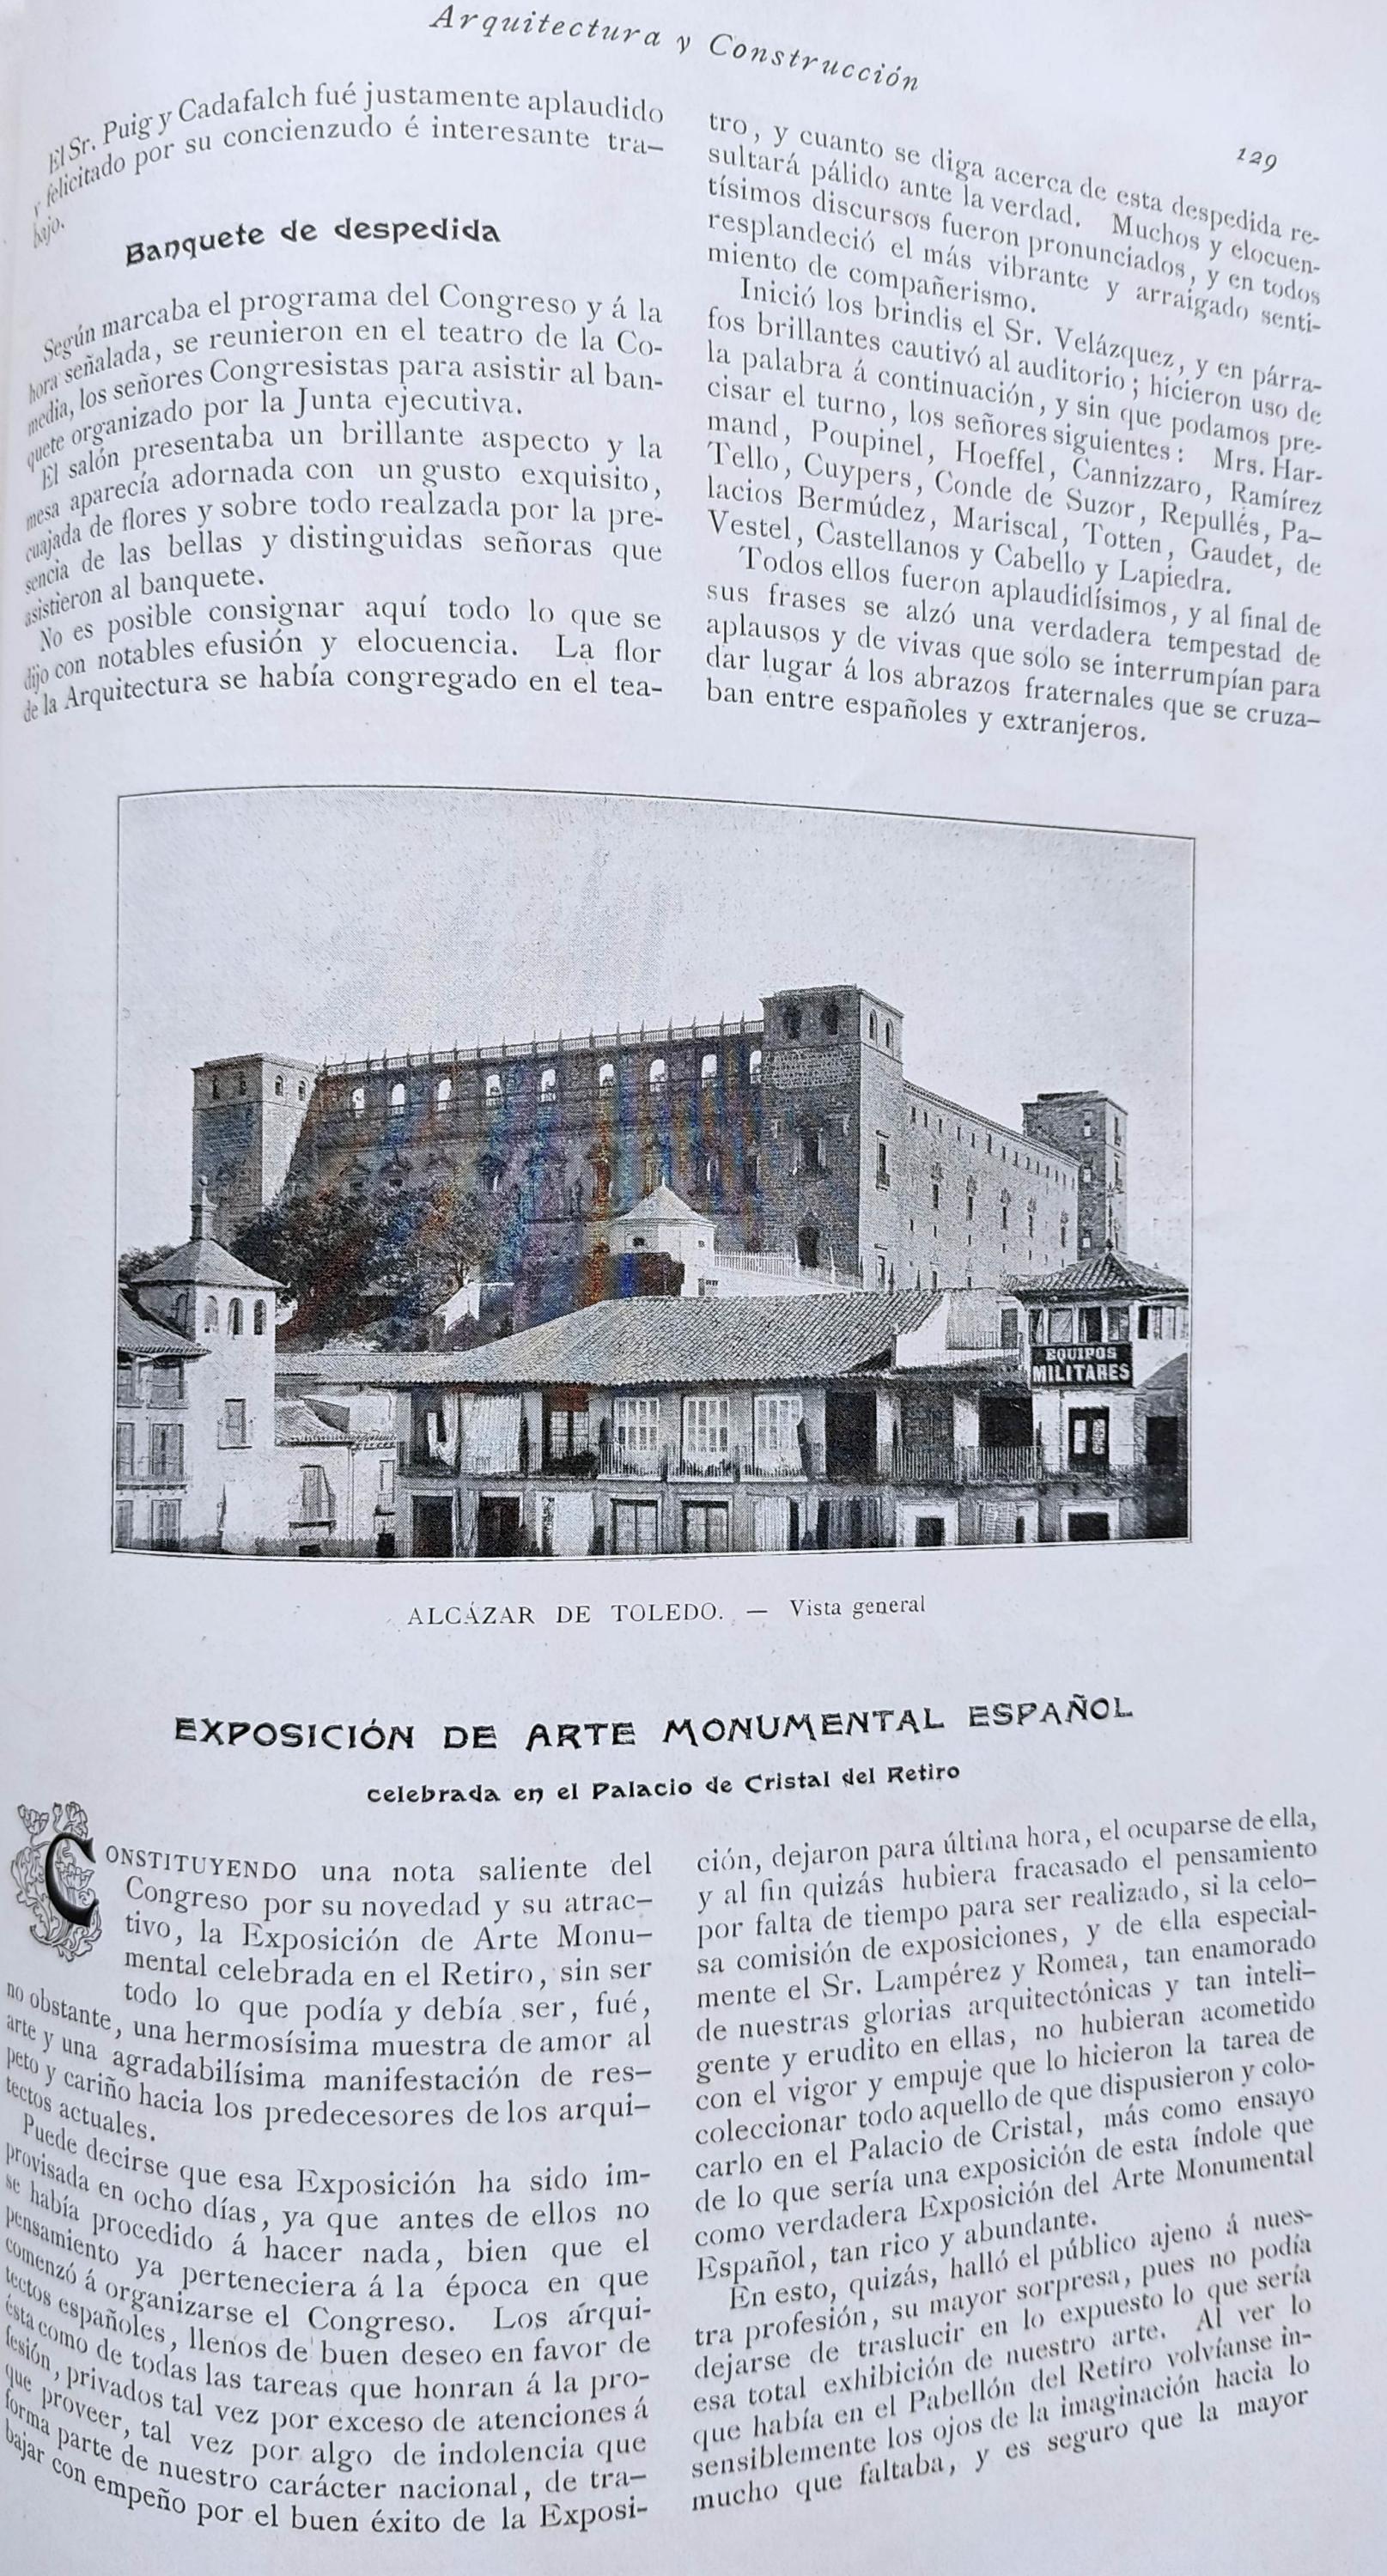  REVISTA MENSUAL DE ABRIL 1904 DE ARQUITECTURA, BELLAS ARTES